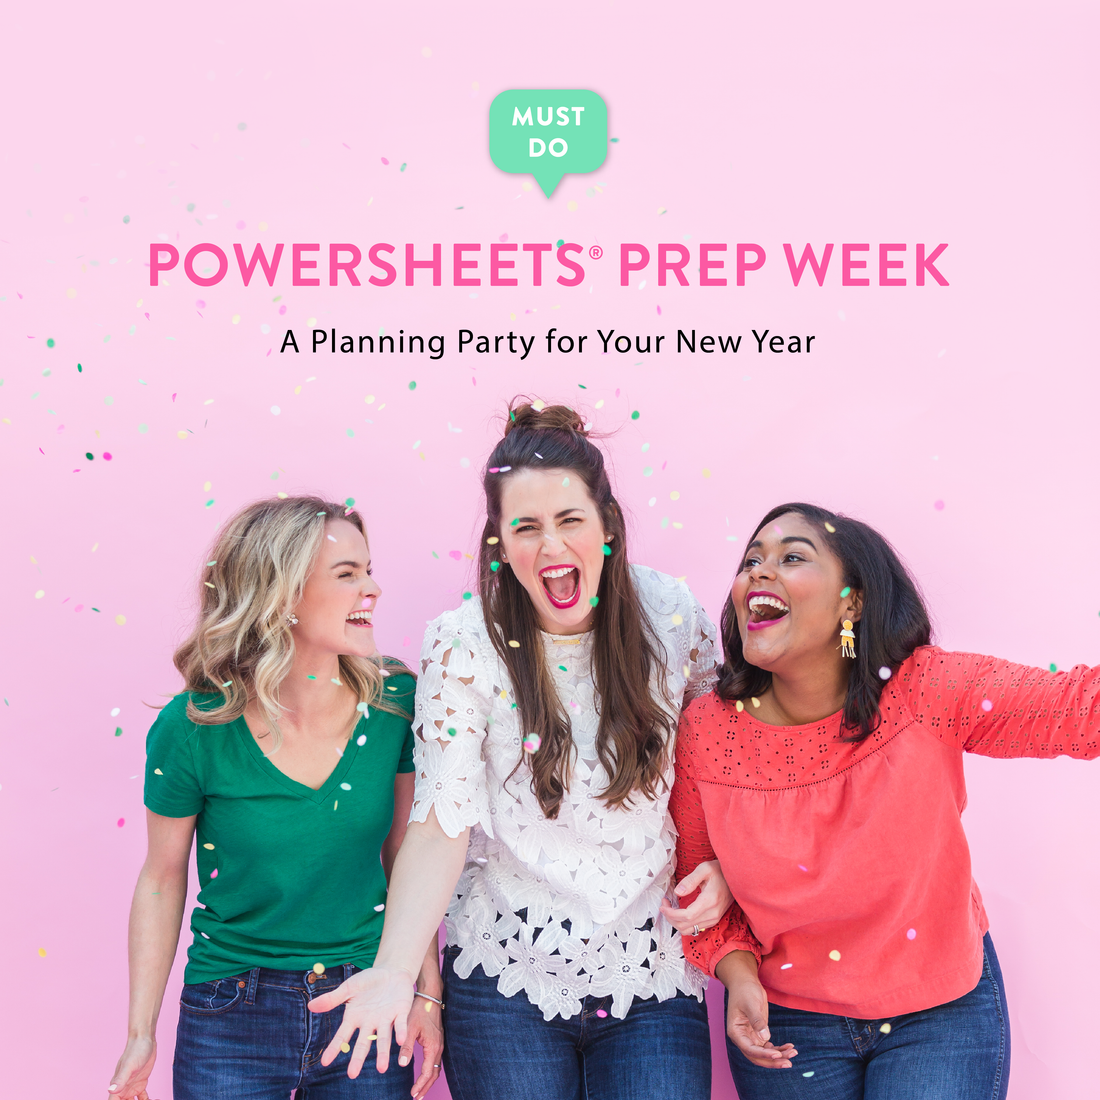 PowerSheets Prep Week is Coming!